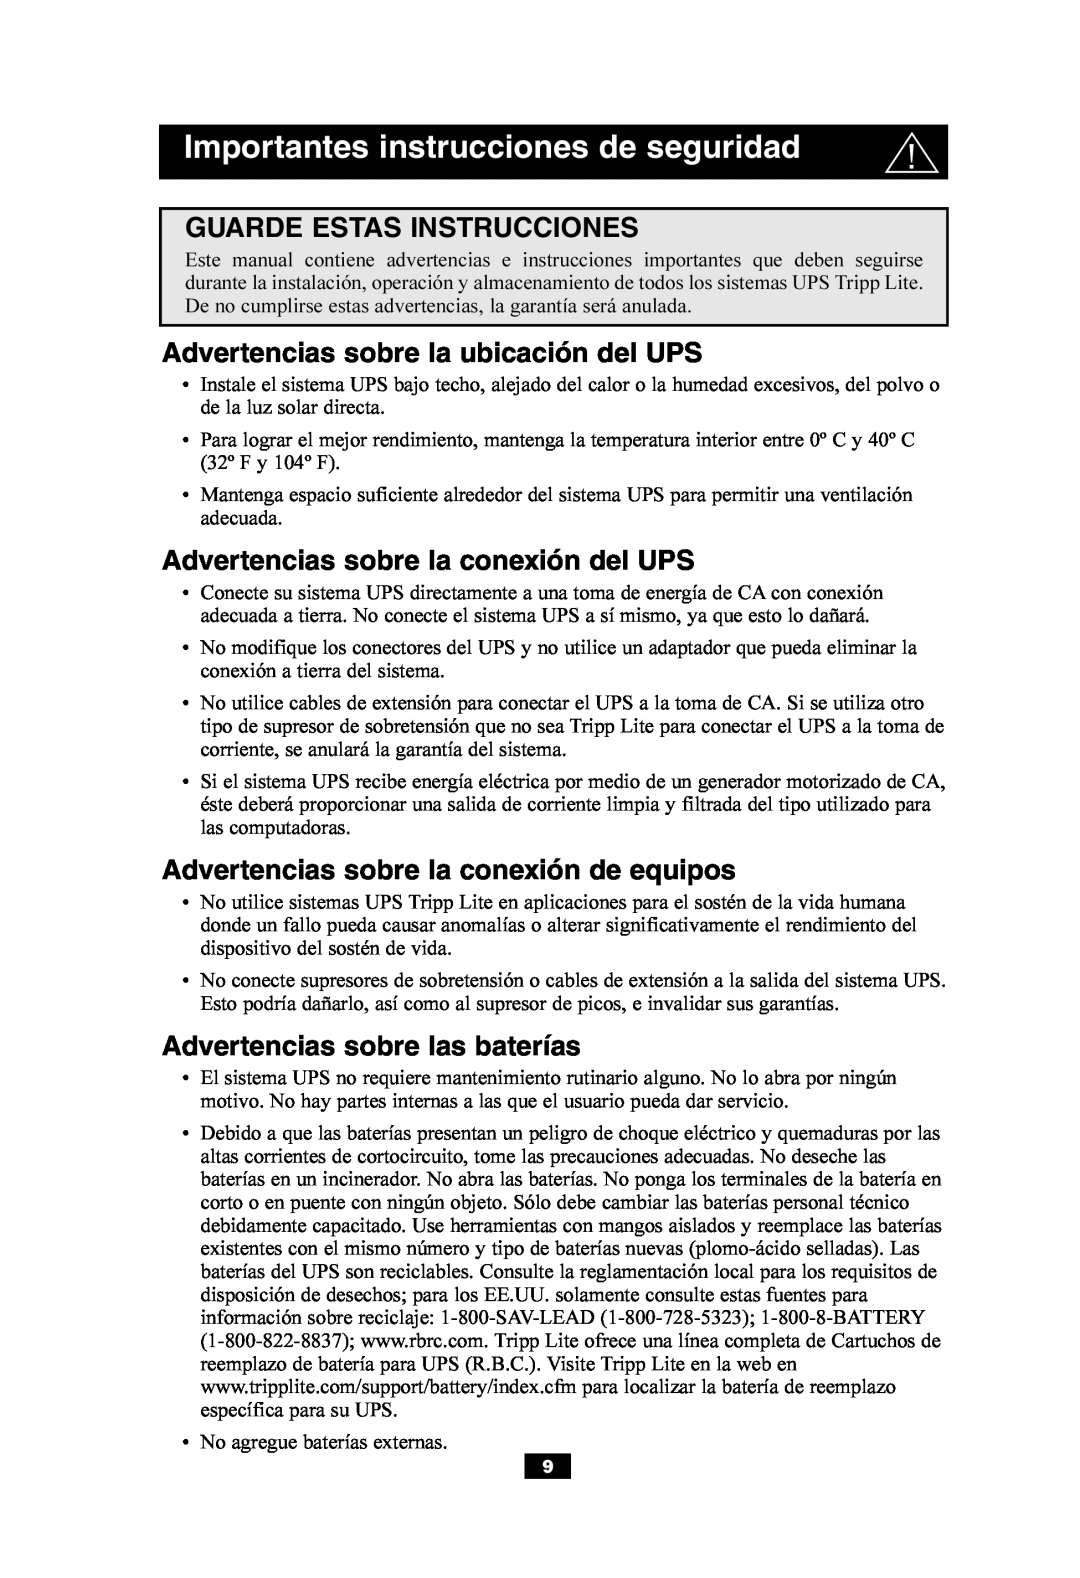 Tripp Lite SMART550USB owner manual Guarde Estas Instrucciones, Advertencias sobre la ubicación del UPS 